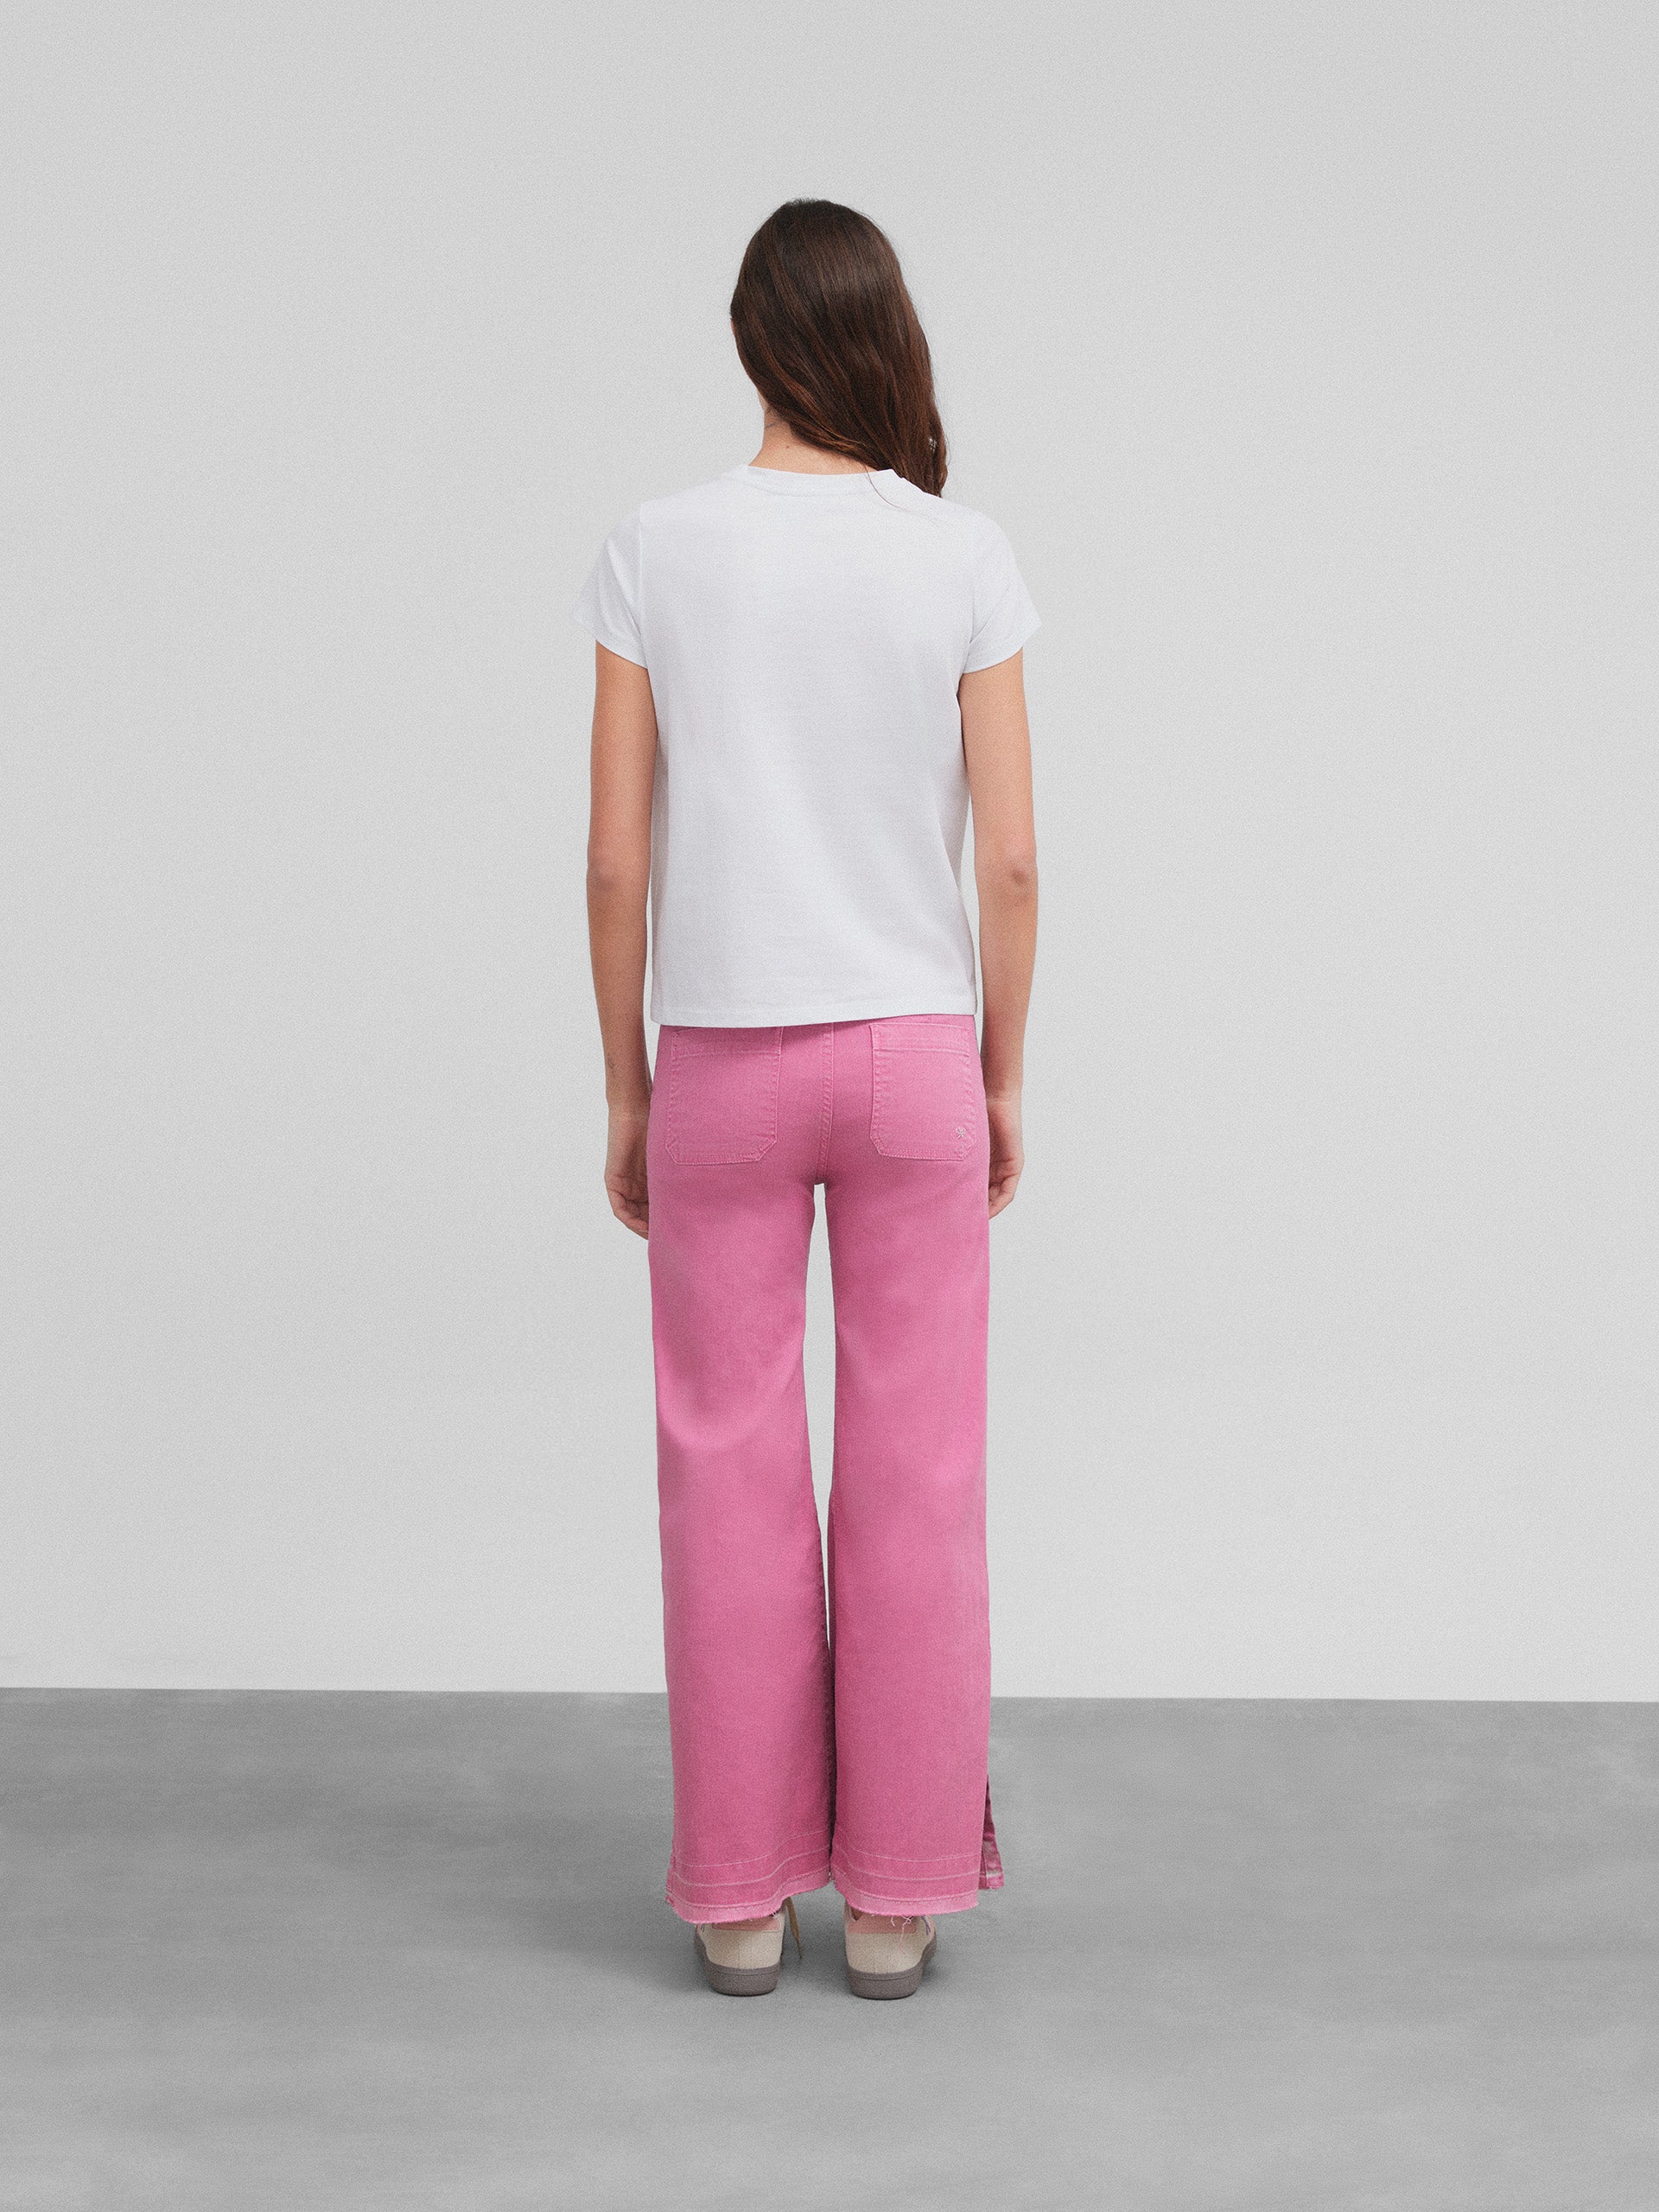 Pantalon jupe-culotte rose avec poches